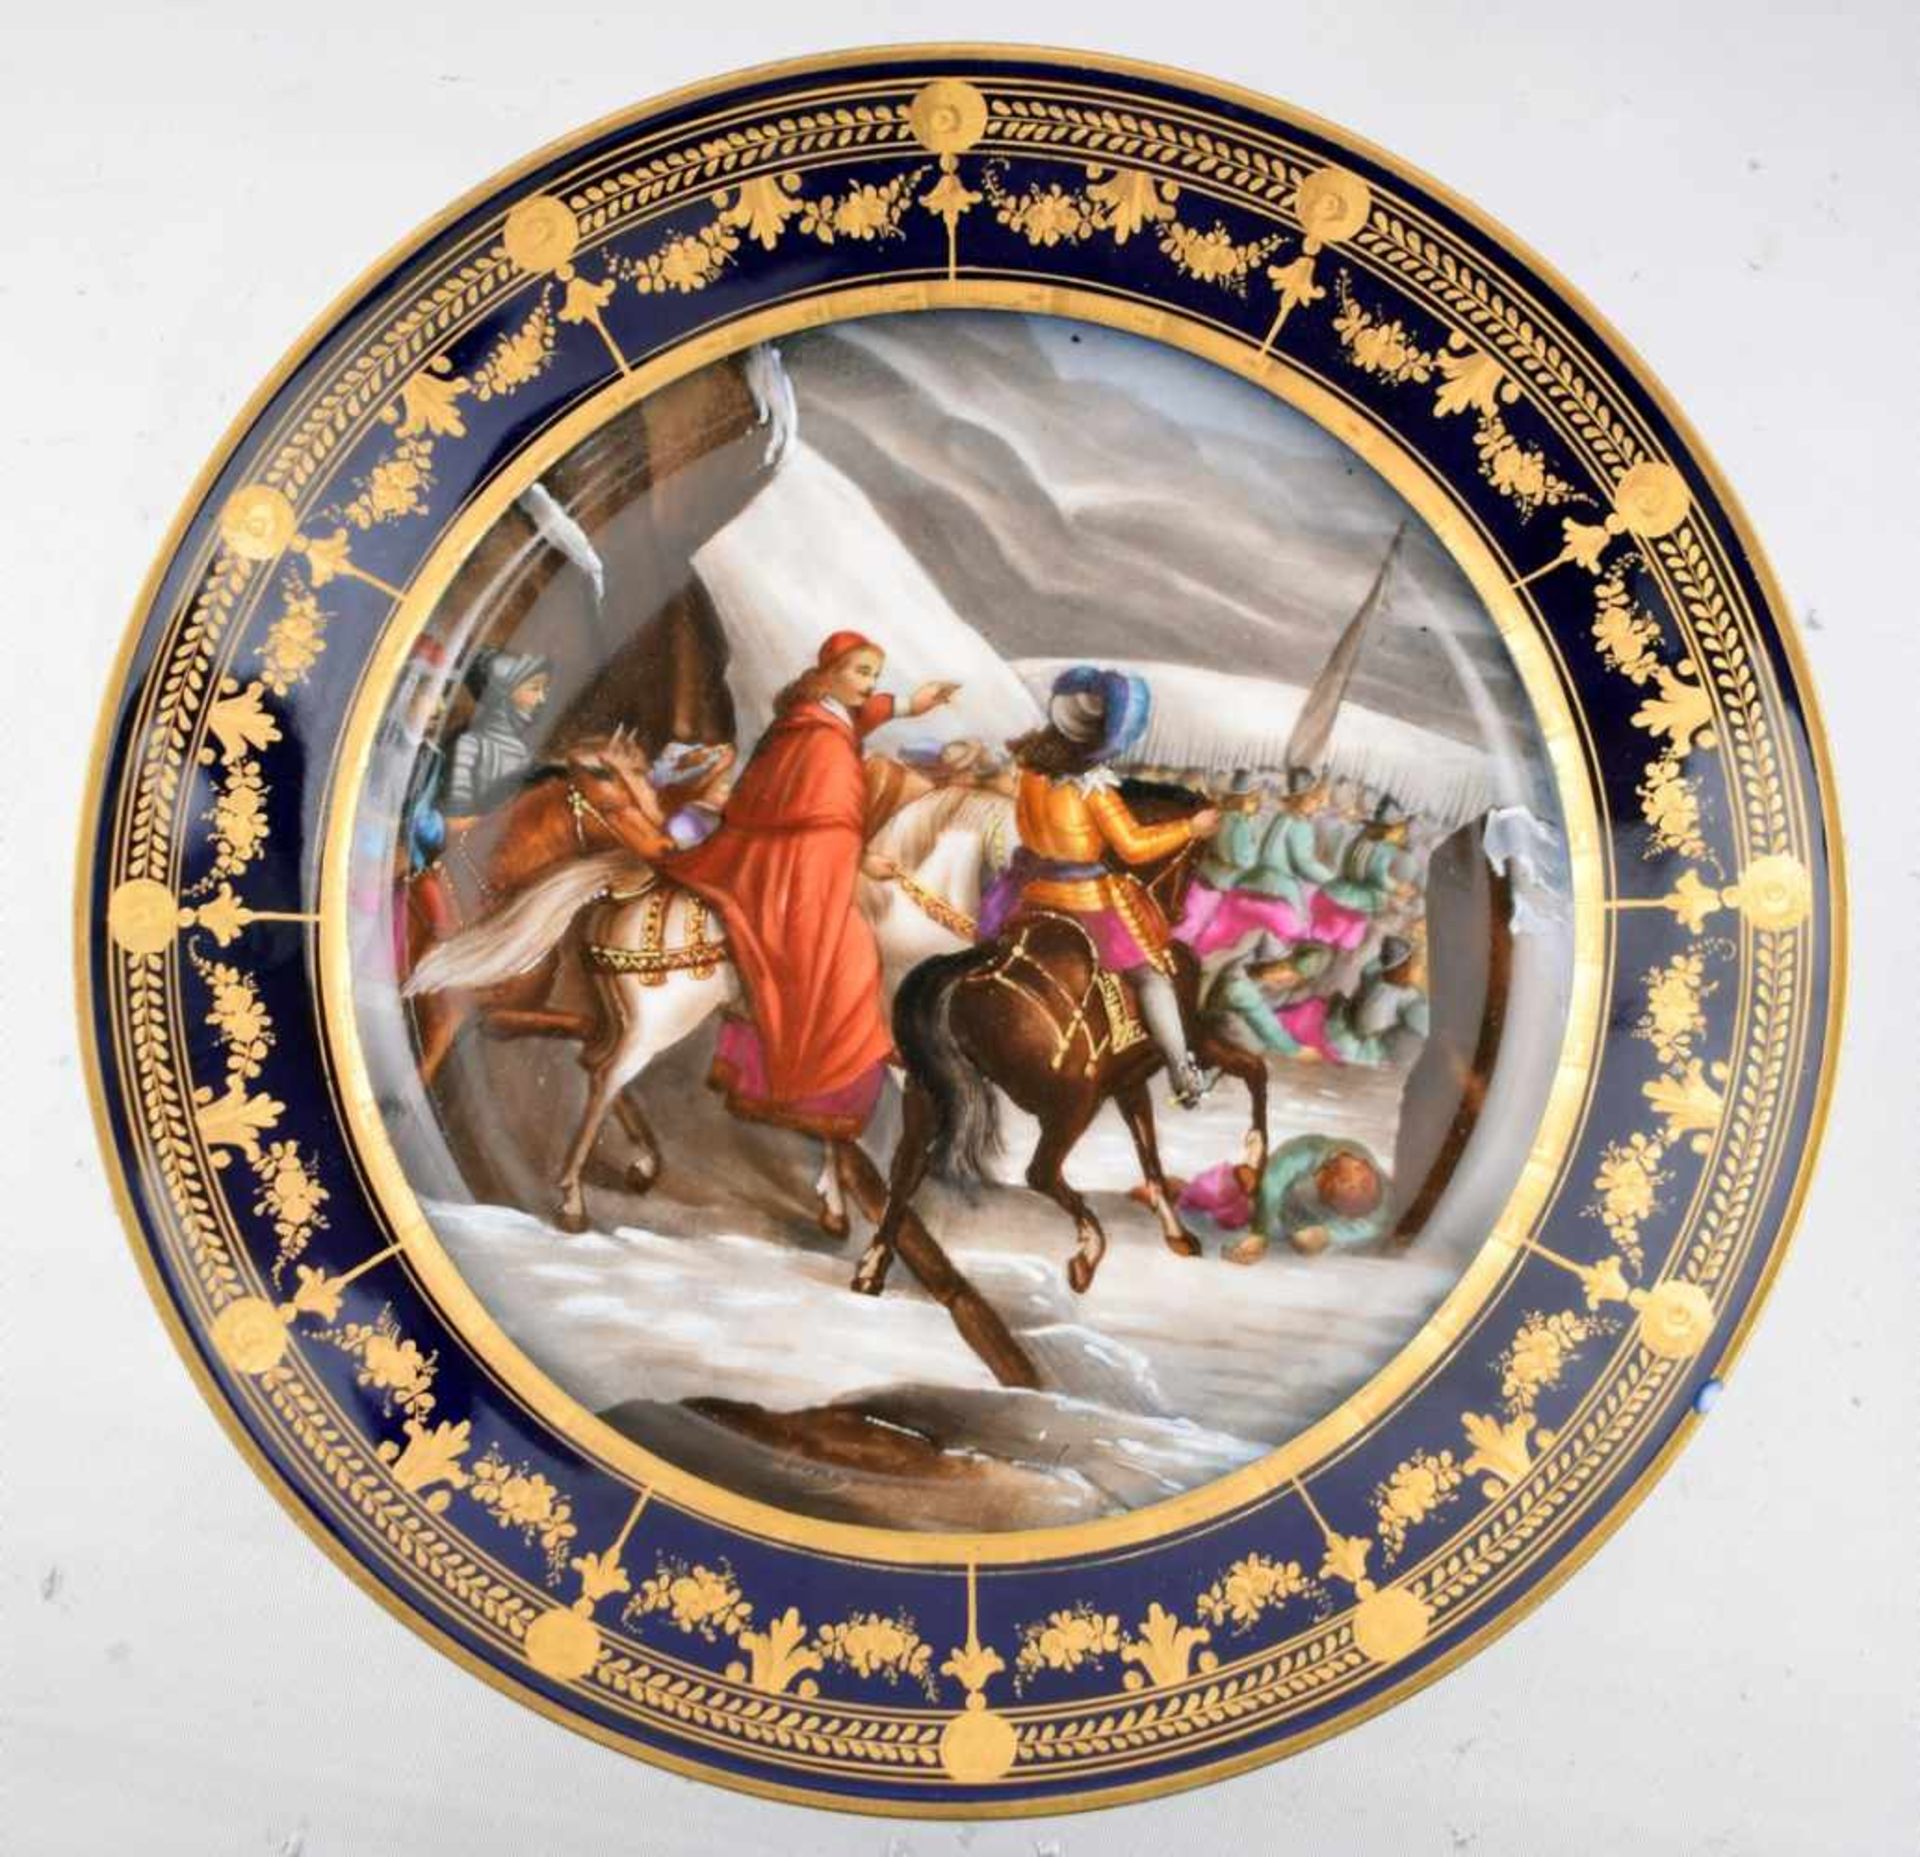 Prunk-Wandteller rund, Rand kobaltblau, gold verziert, Spiegel mit Kardinal, Ritter zu Pferd und